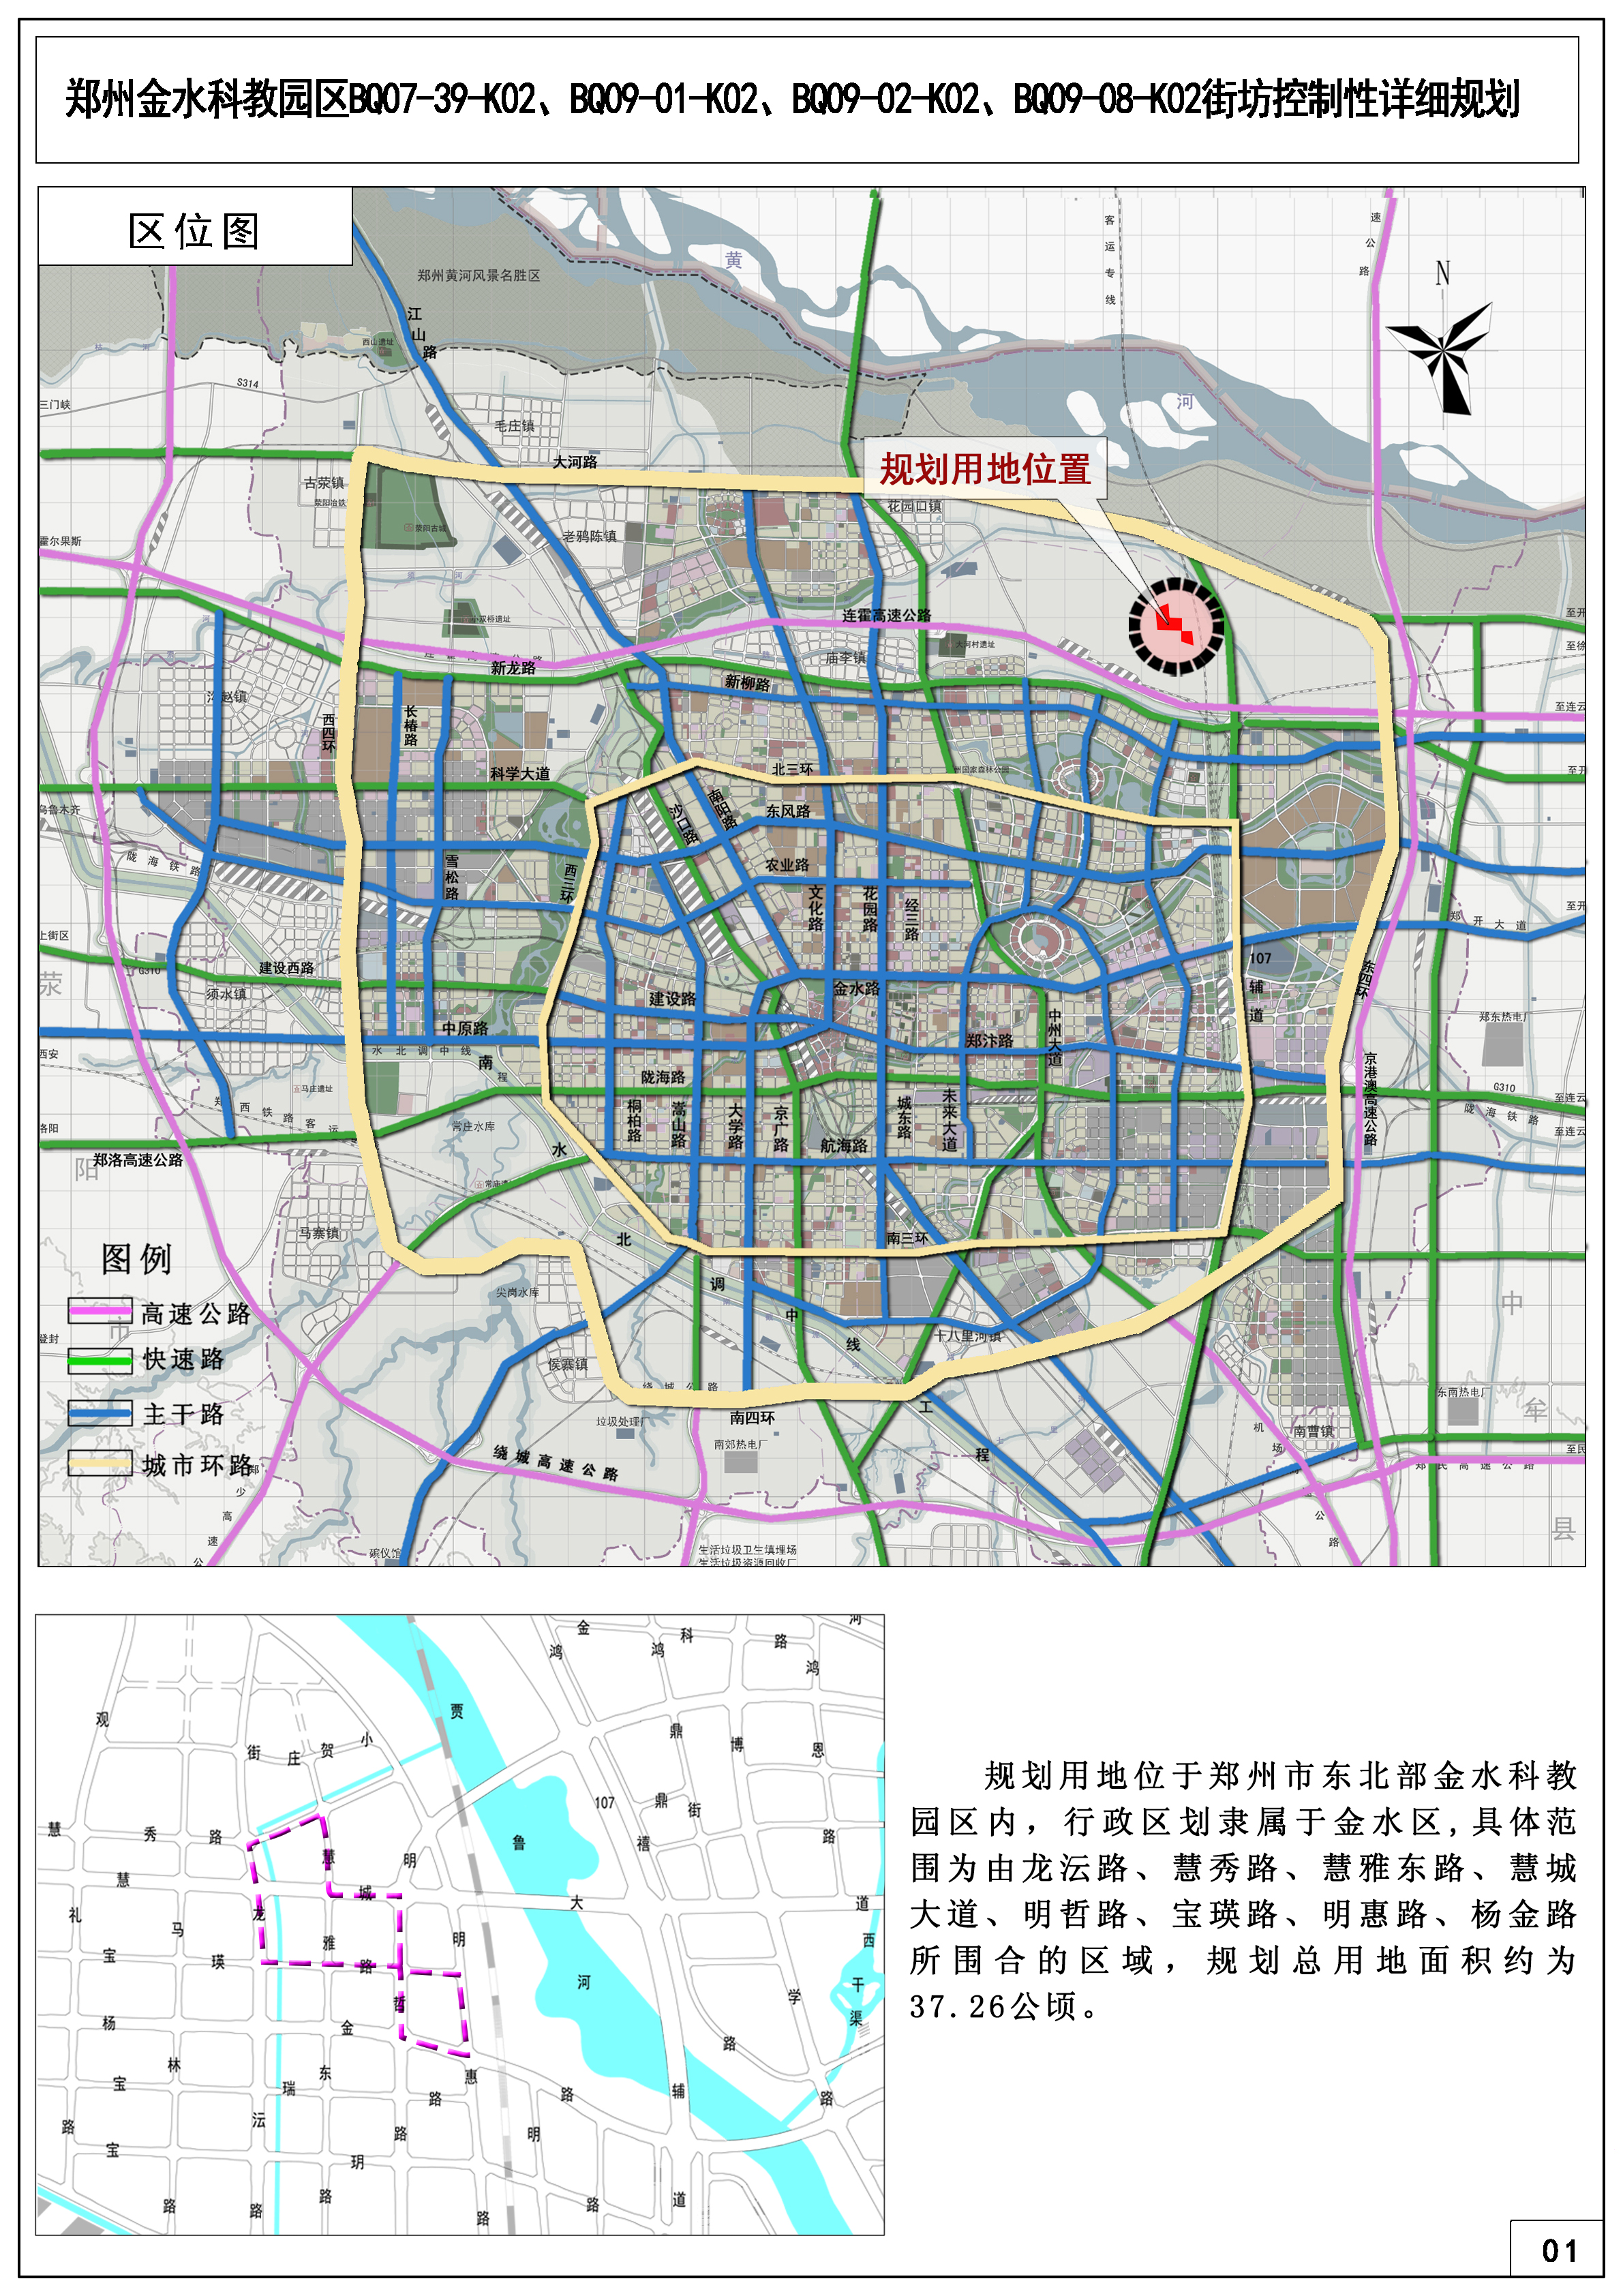 郑州金水科教园区BQ07-39-K02、BQ09-01-K02、BQ09-02-K02、BQ09-08-K02街坊控制性详细规划